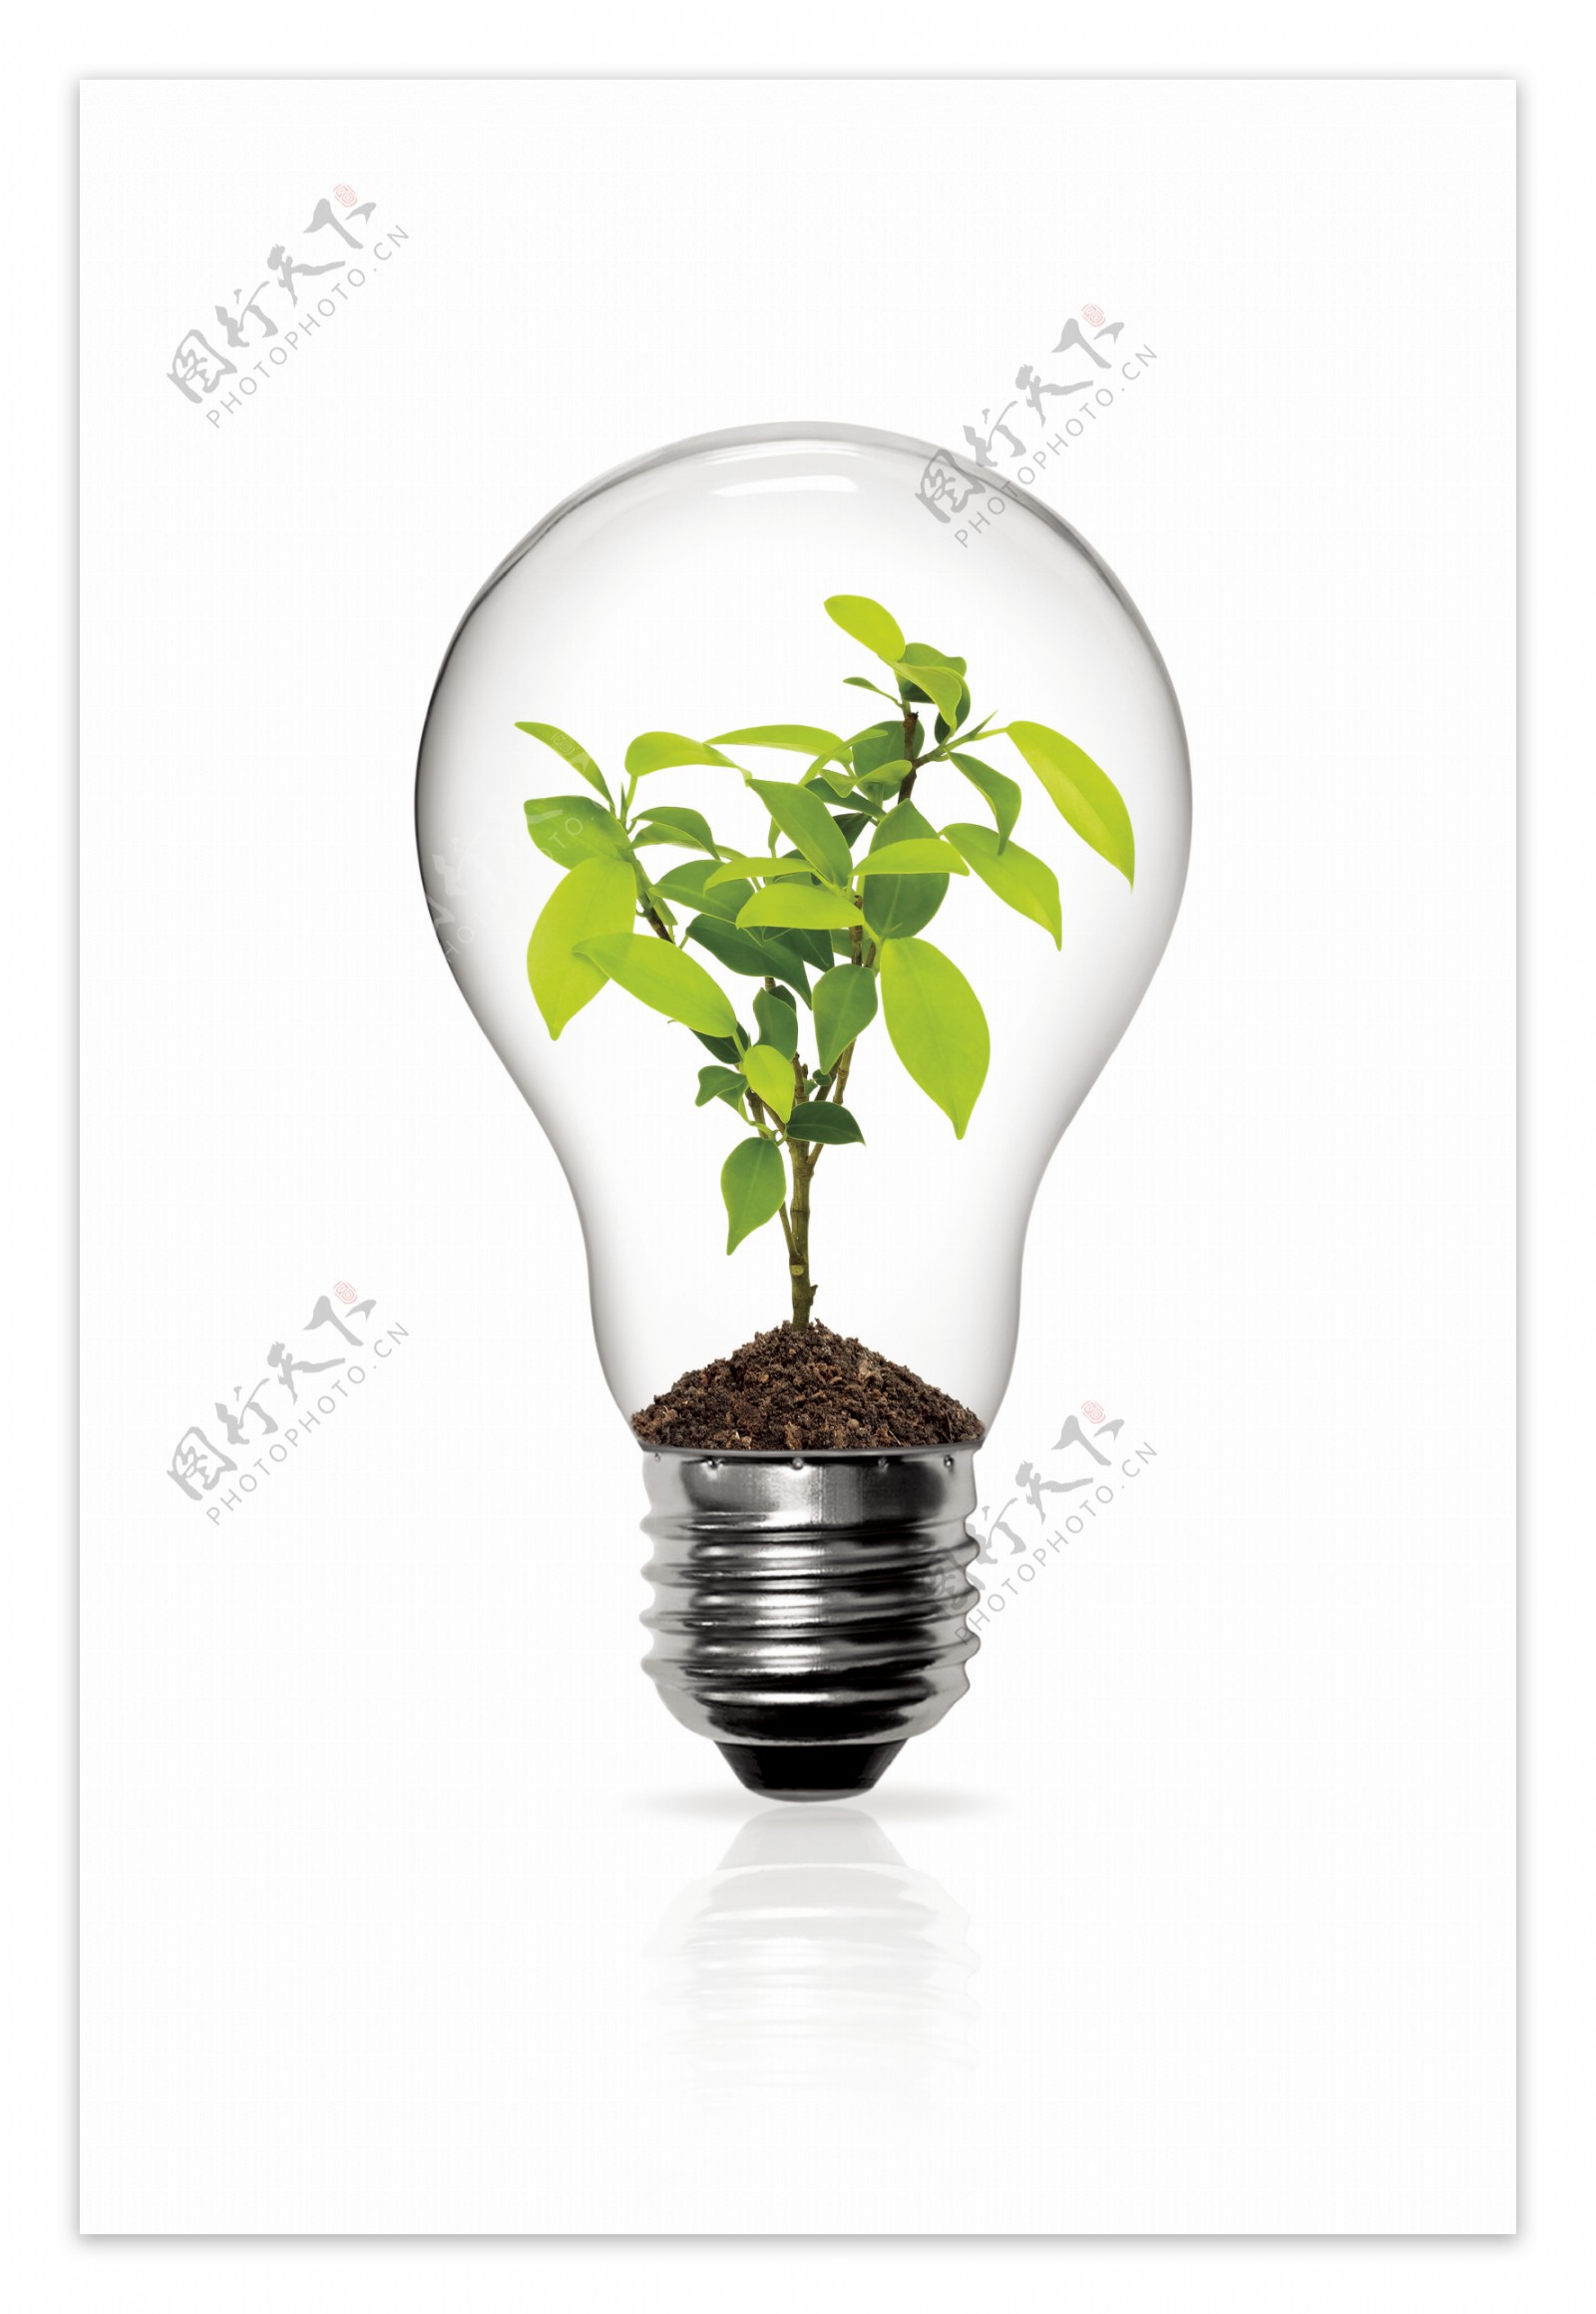 创意灯泡里的小树苗设计图片素材